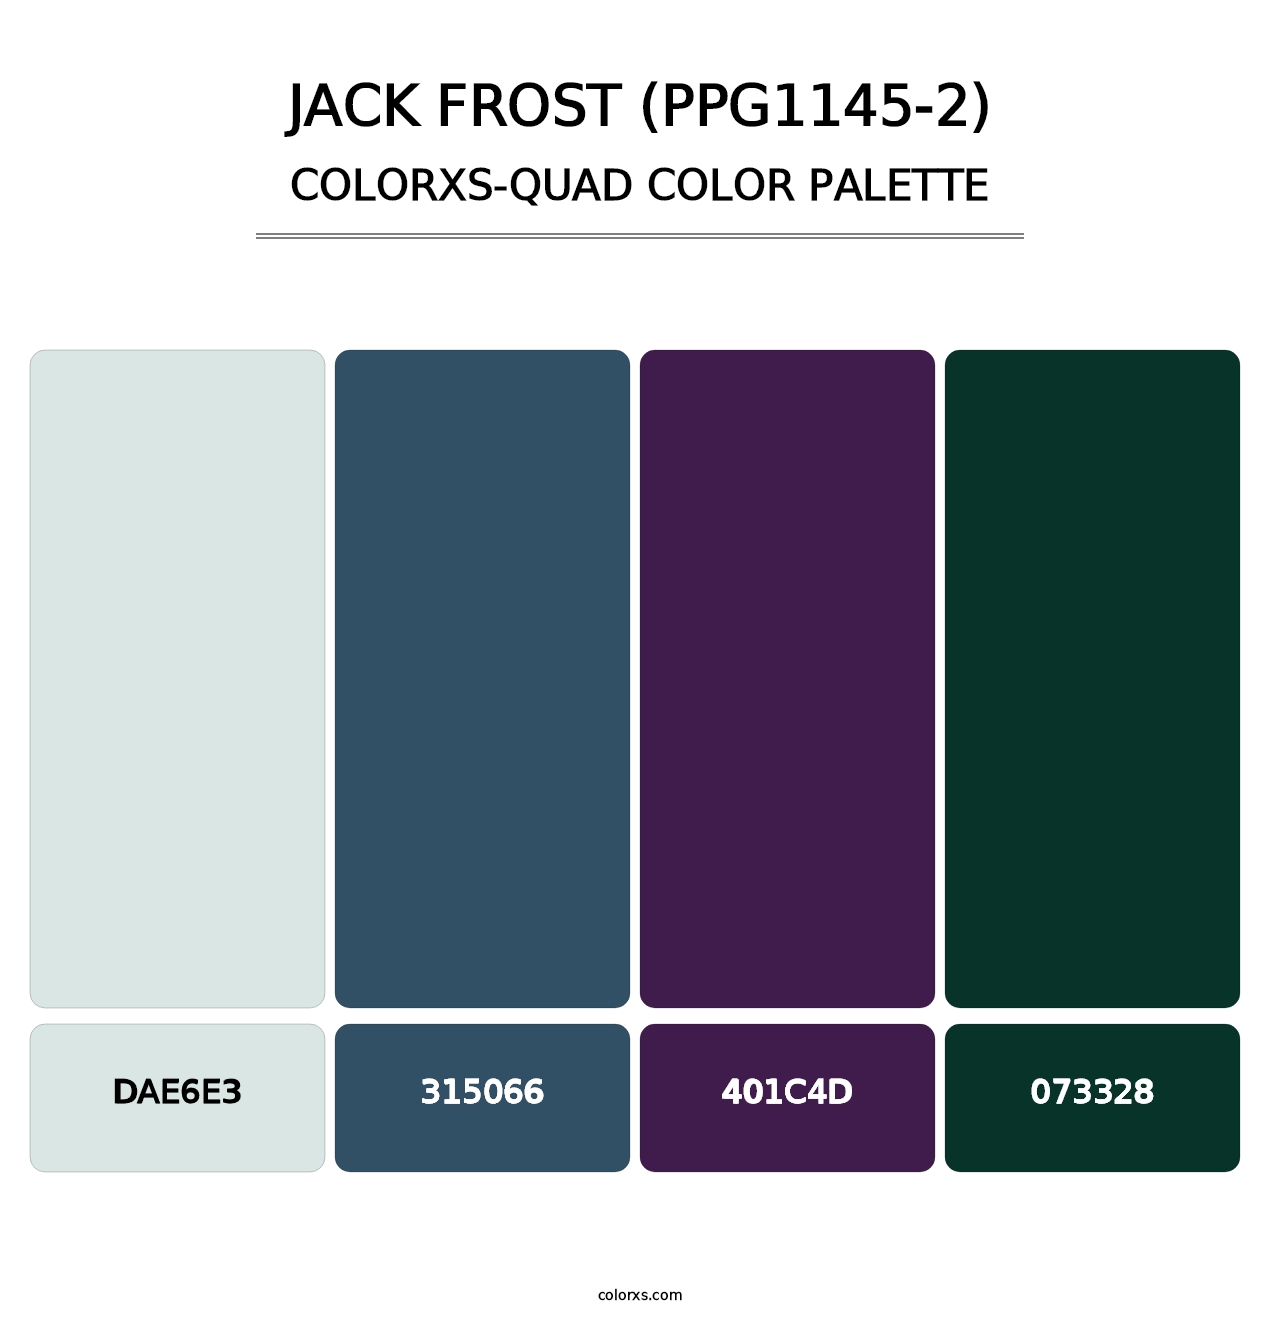 Jack Frost (PPG1145-2) - Colorxs Quad Palette